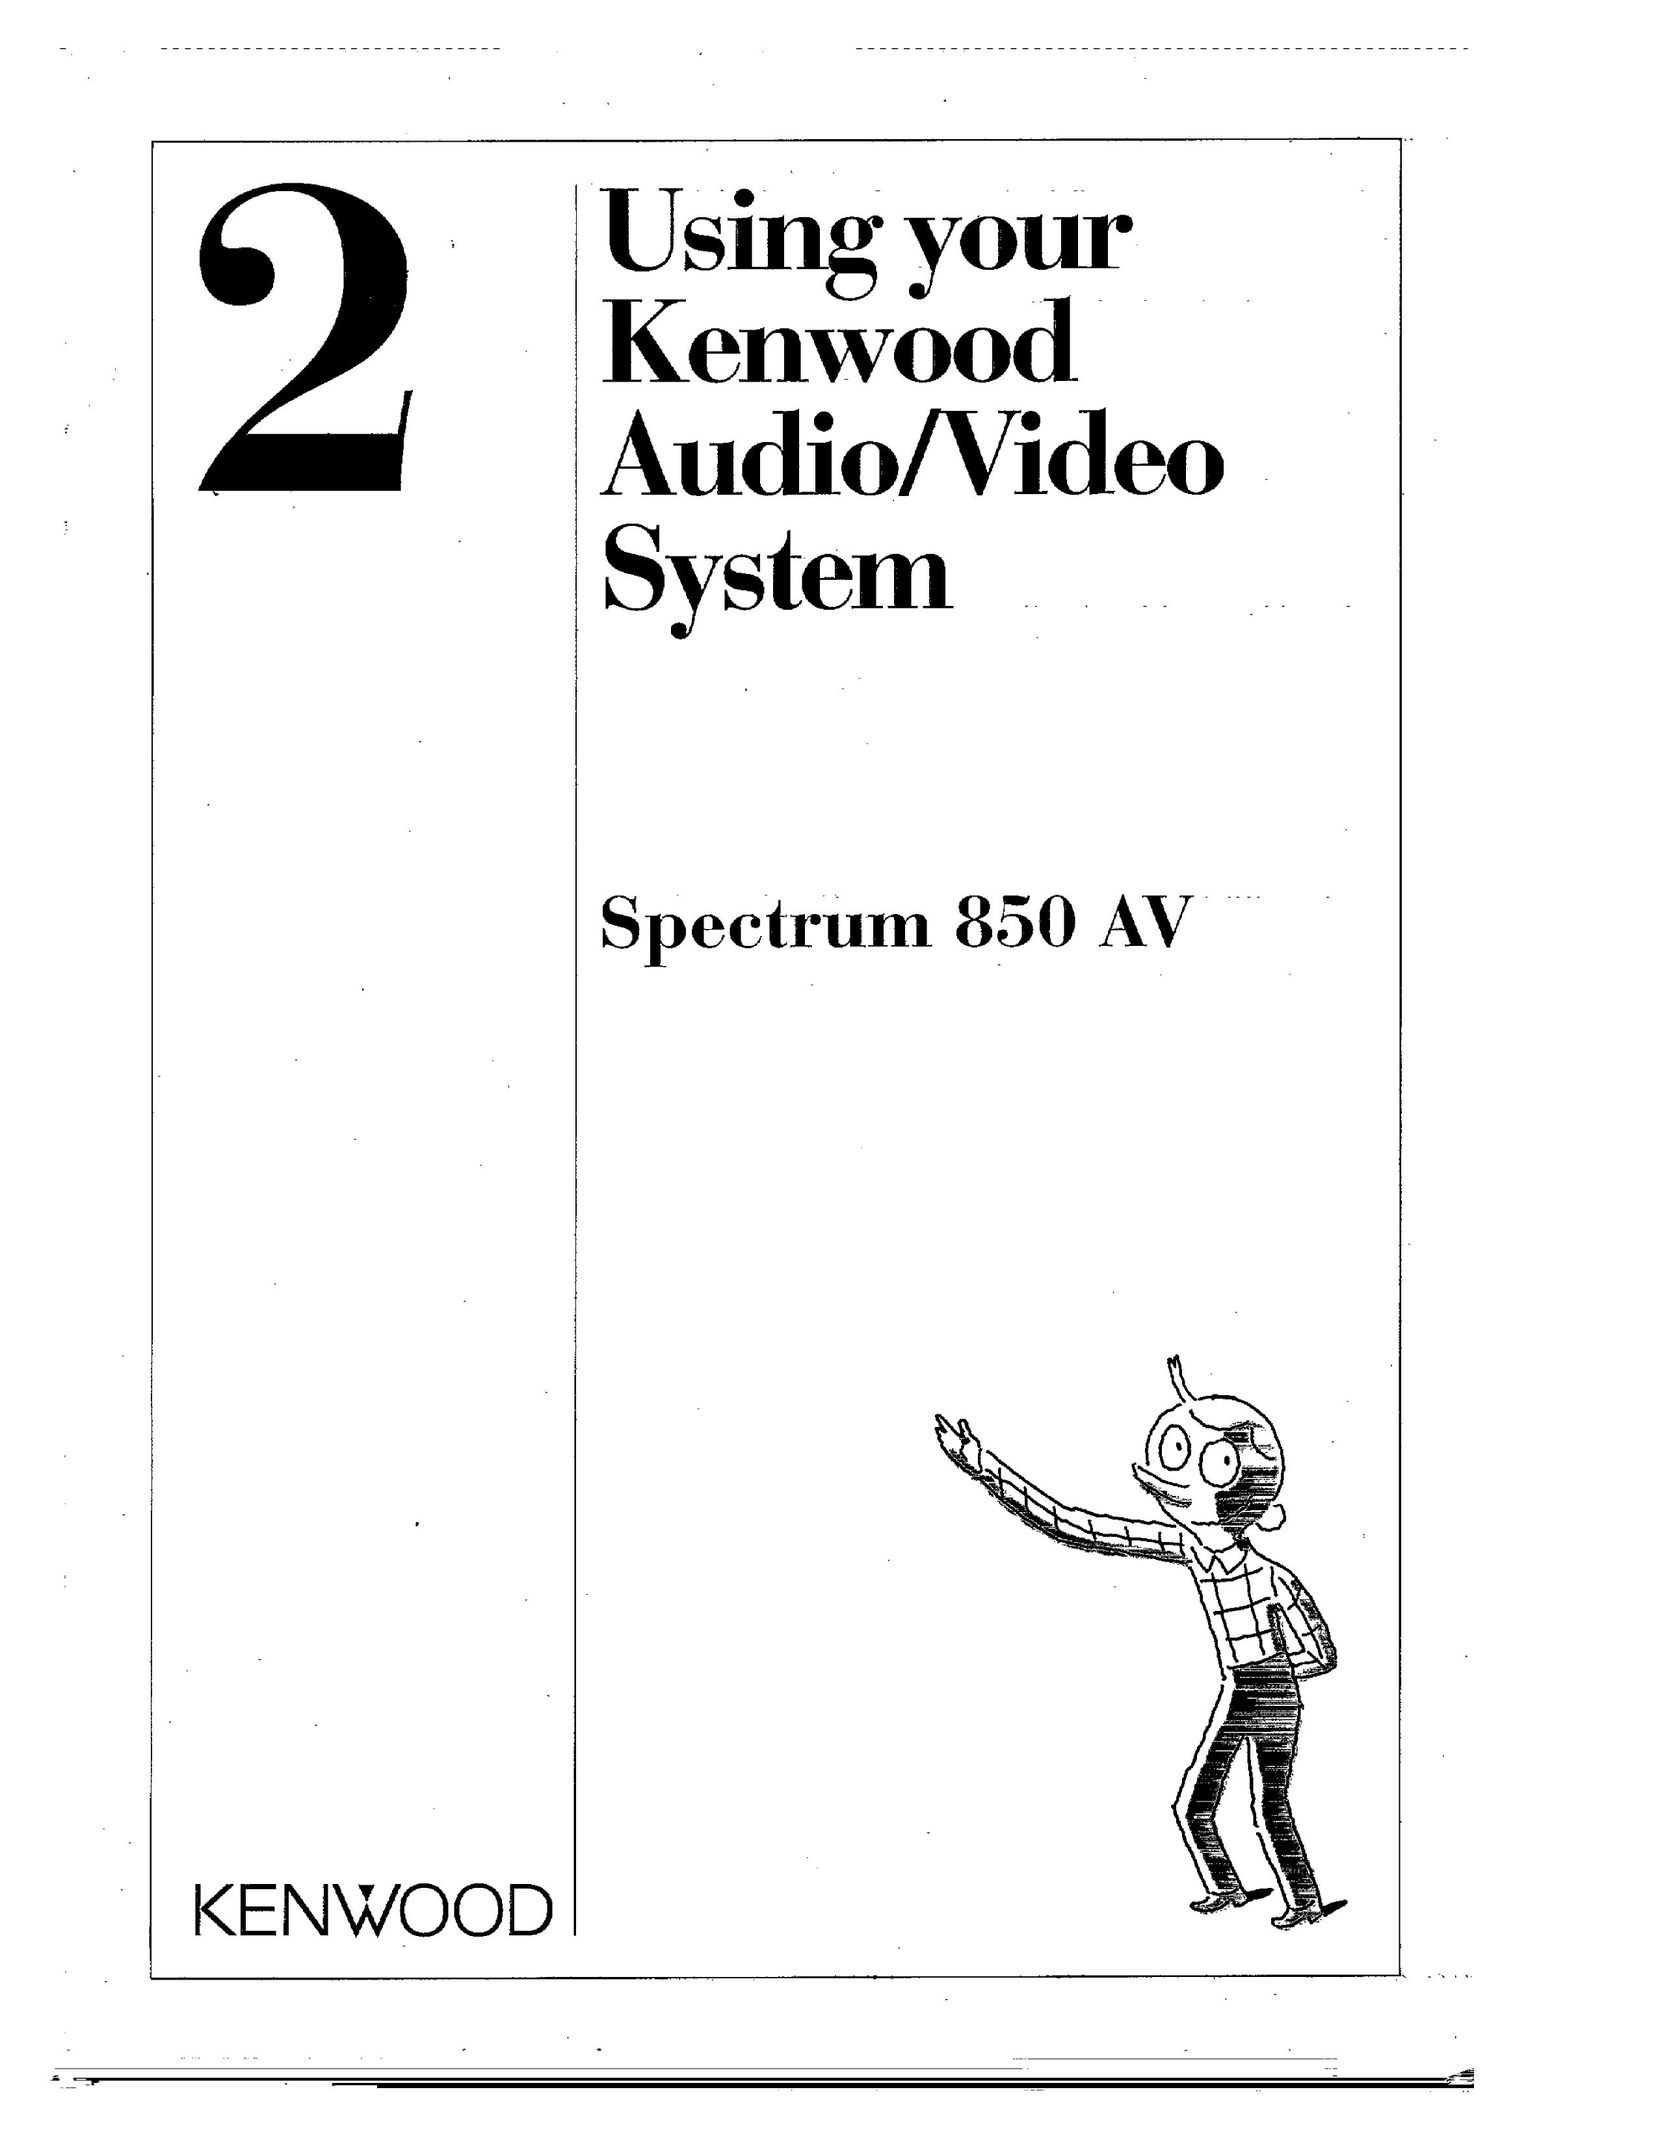 Kenwood 850 AV Stereo Receiver User Manual